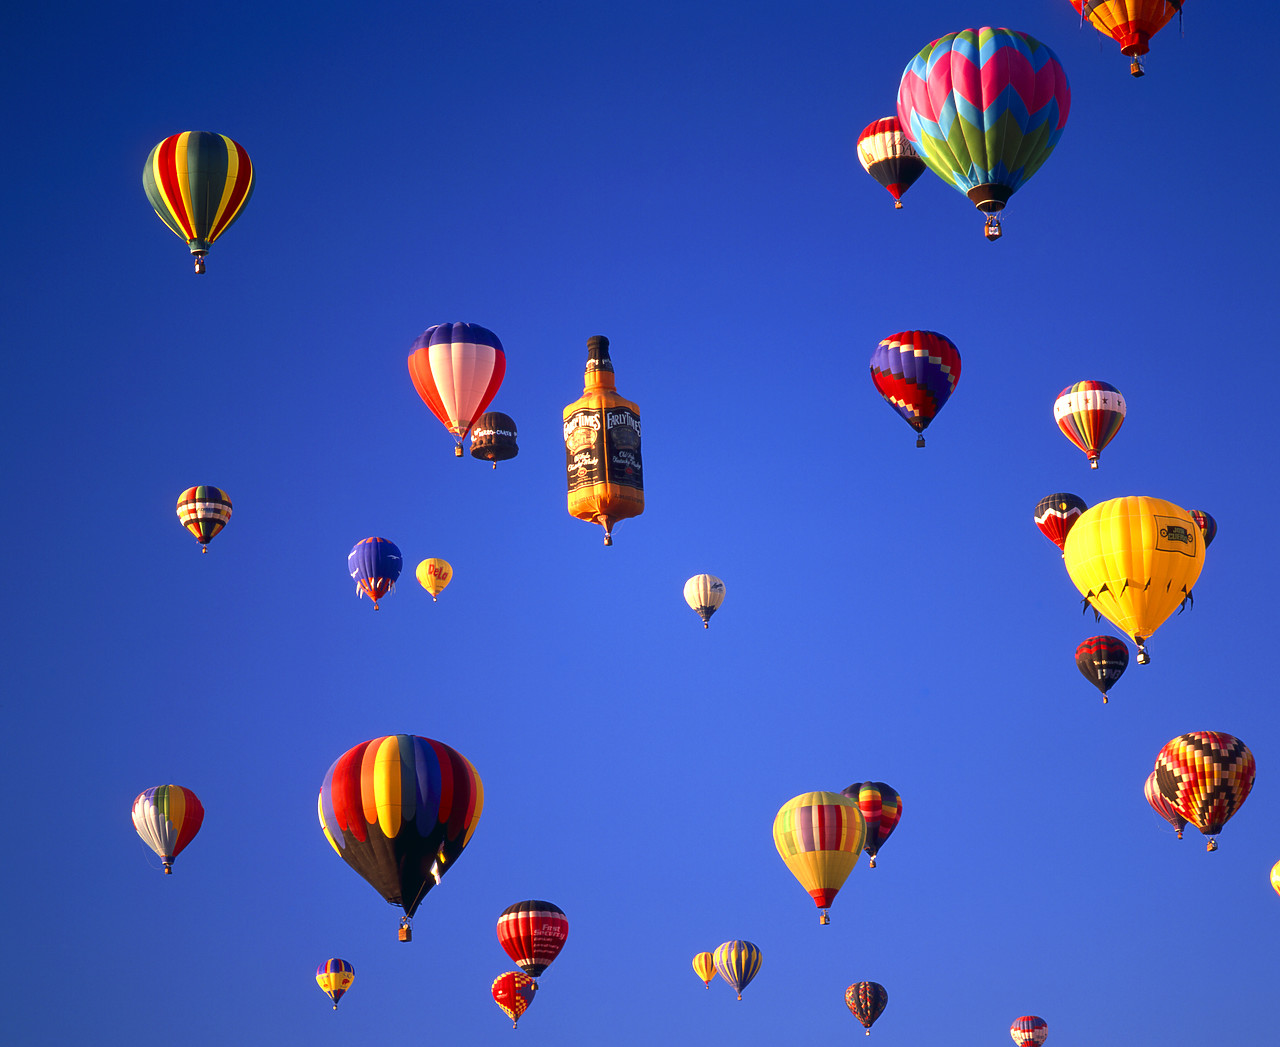 #990587-1 - Hot Air Balloons, Albuquerque, New Mexico, USA